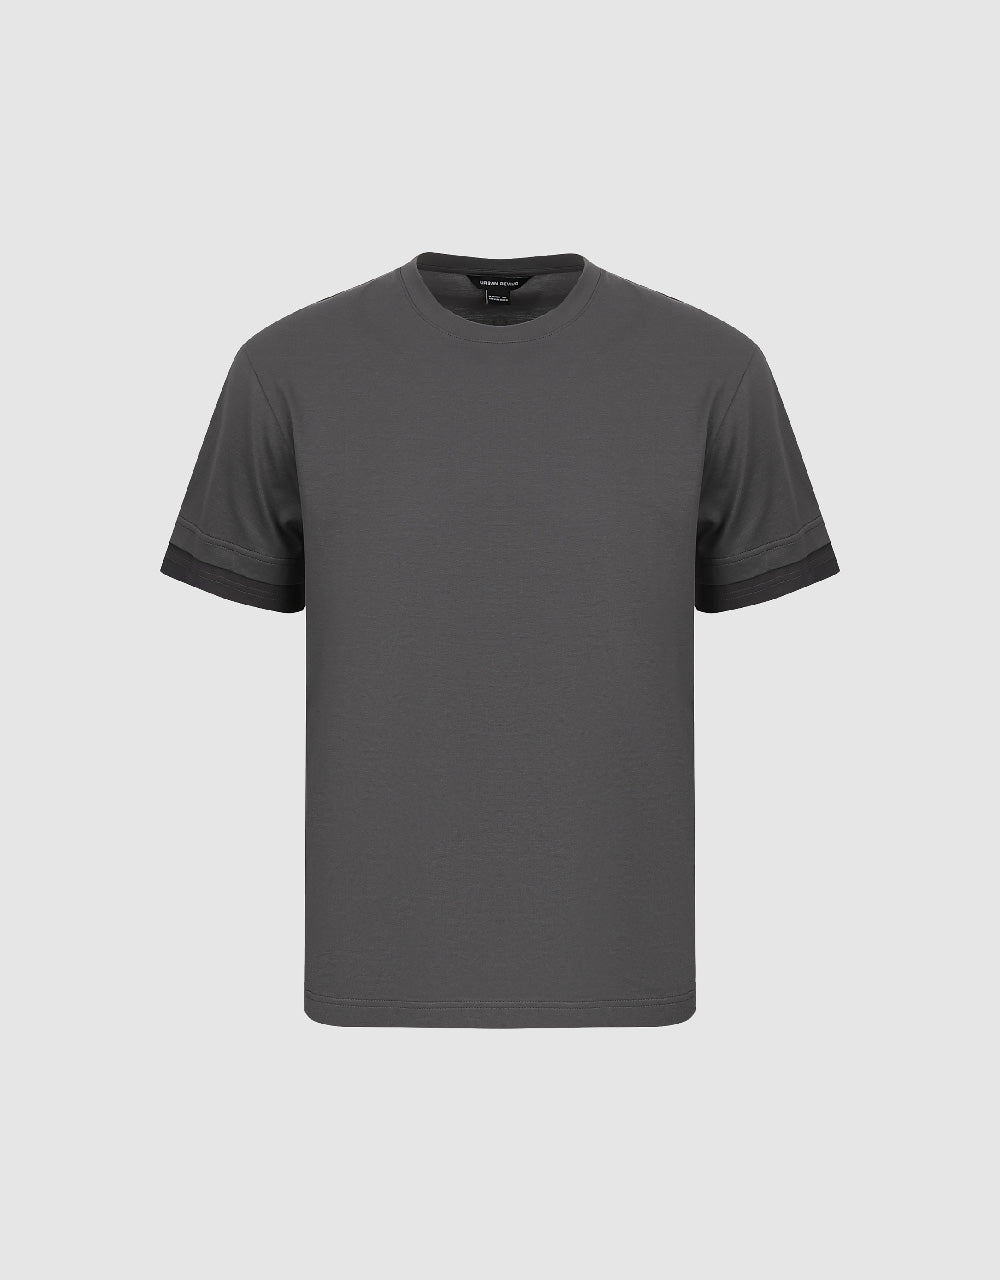 Standard Sleeve Crew Neck T-Shirt